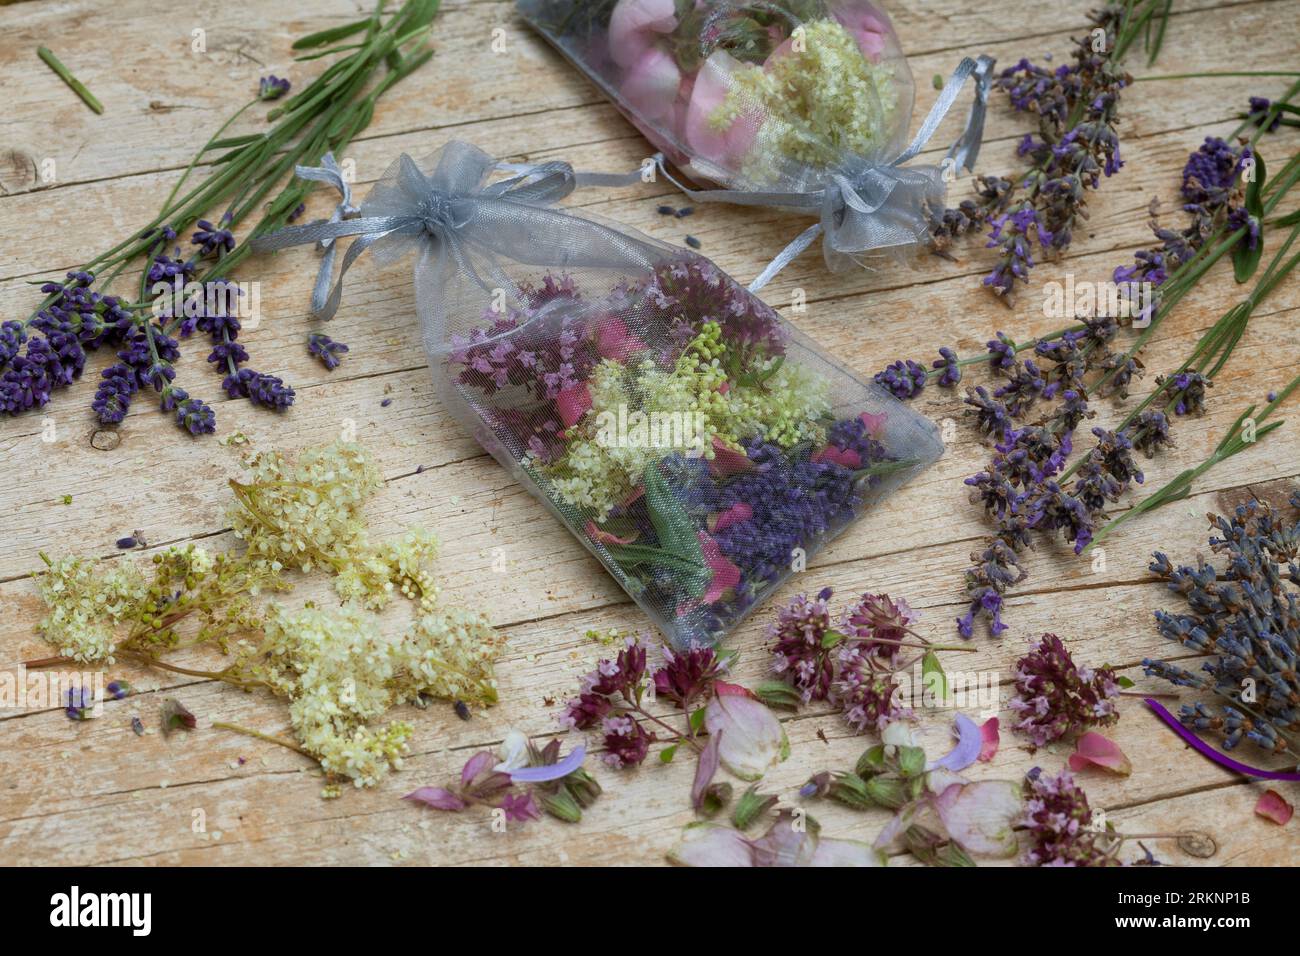 selbstgemachte duftende Beutel, verschiedene duftende Pflanzen, in Mullsäcke gegeben: Lavendel, Rosenblüten, Wiesensüße, Marjoram und Ysop Stockfoto